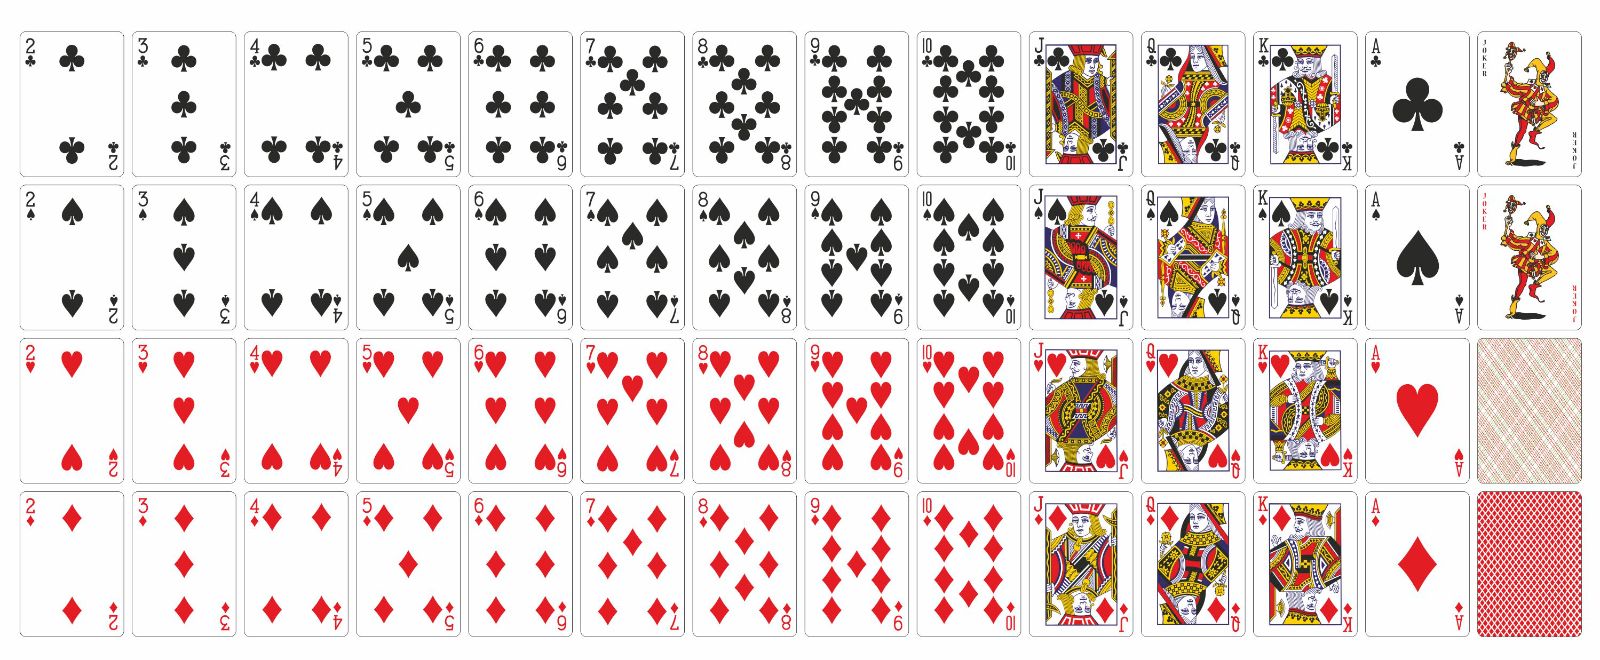 Как правильно называются карты. Карты Геншин, колода 54 карты. Карточная колода 52 карты. Покер колода 52 карты. Распечатка игровых карт.